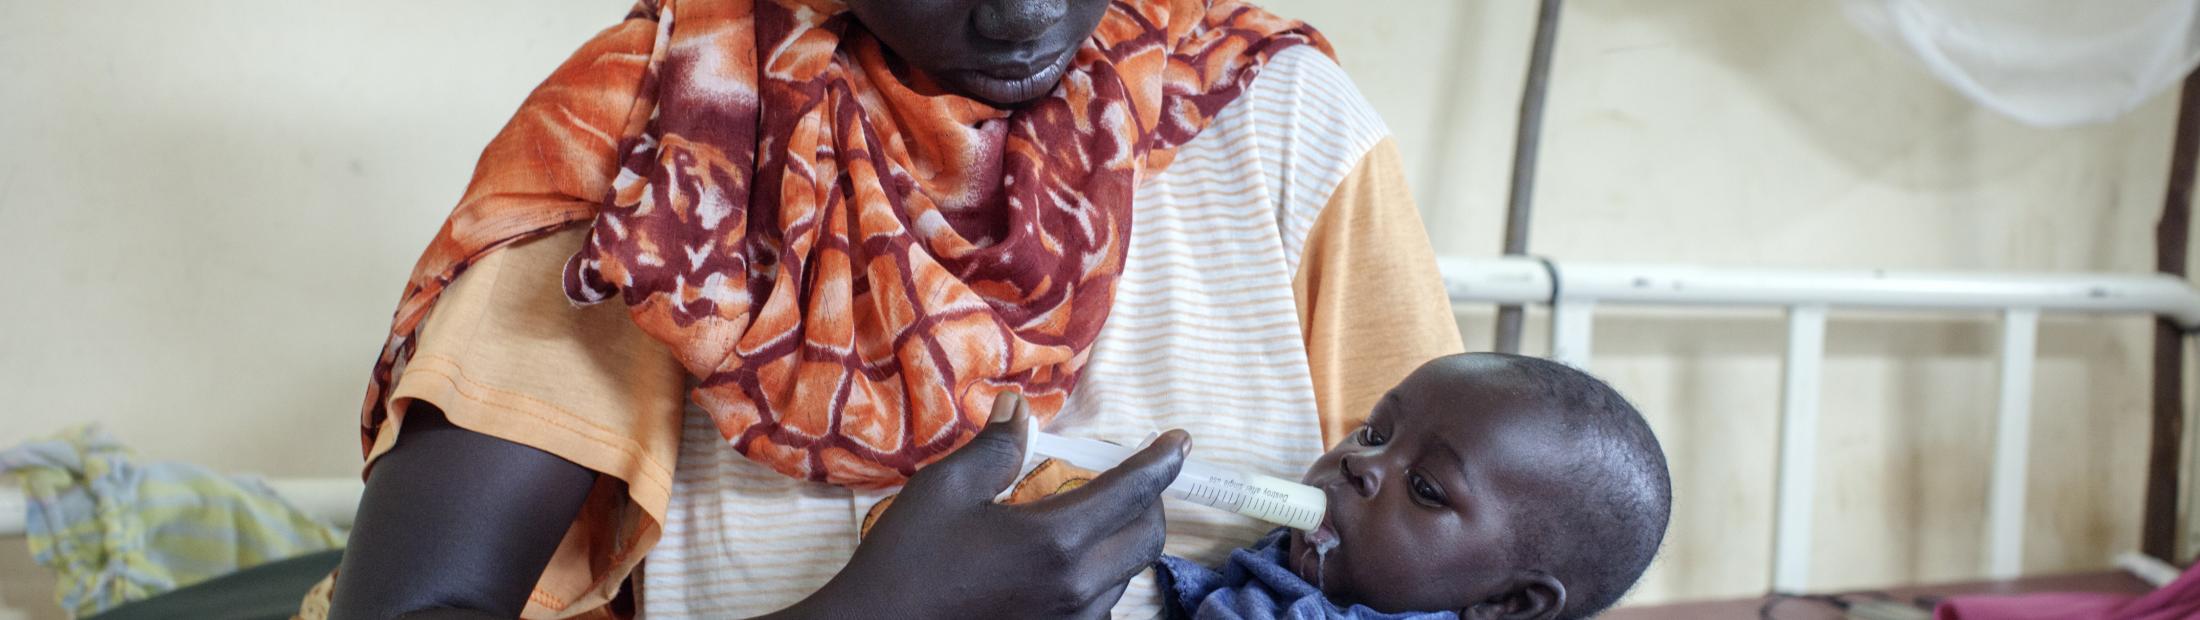 Más de 40.000 refugiados sudaneses han mejorado su salud gracias a la cooperación entre la Fundación "La Caixa" y ACNUR